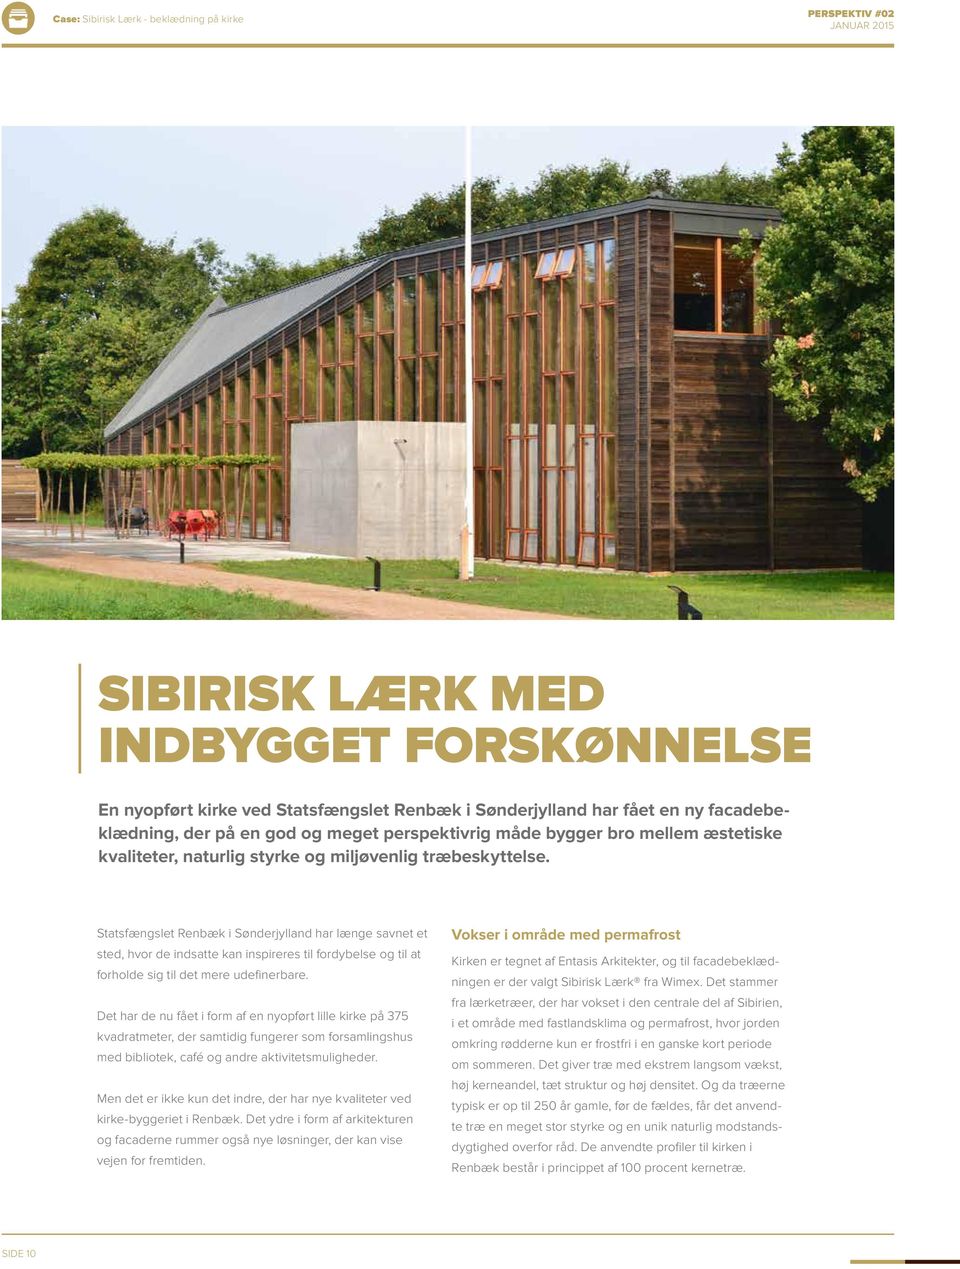 Statsfængslet Renbæk i Sønderjylland har længe savnet et sted, hvor de indsatte kan inspireres til fordybelse og til at forholde sig til det mere udefinerbare.